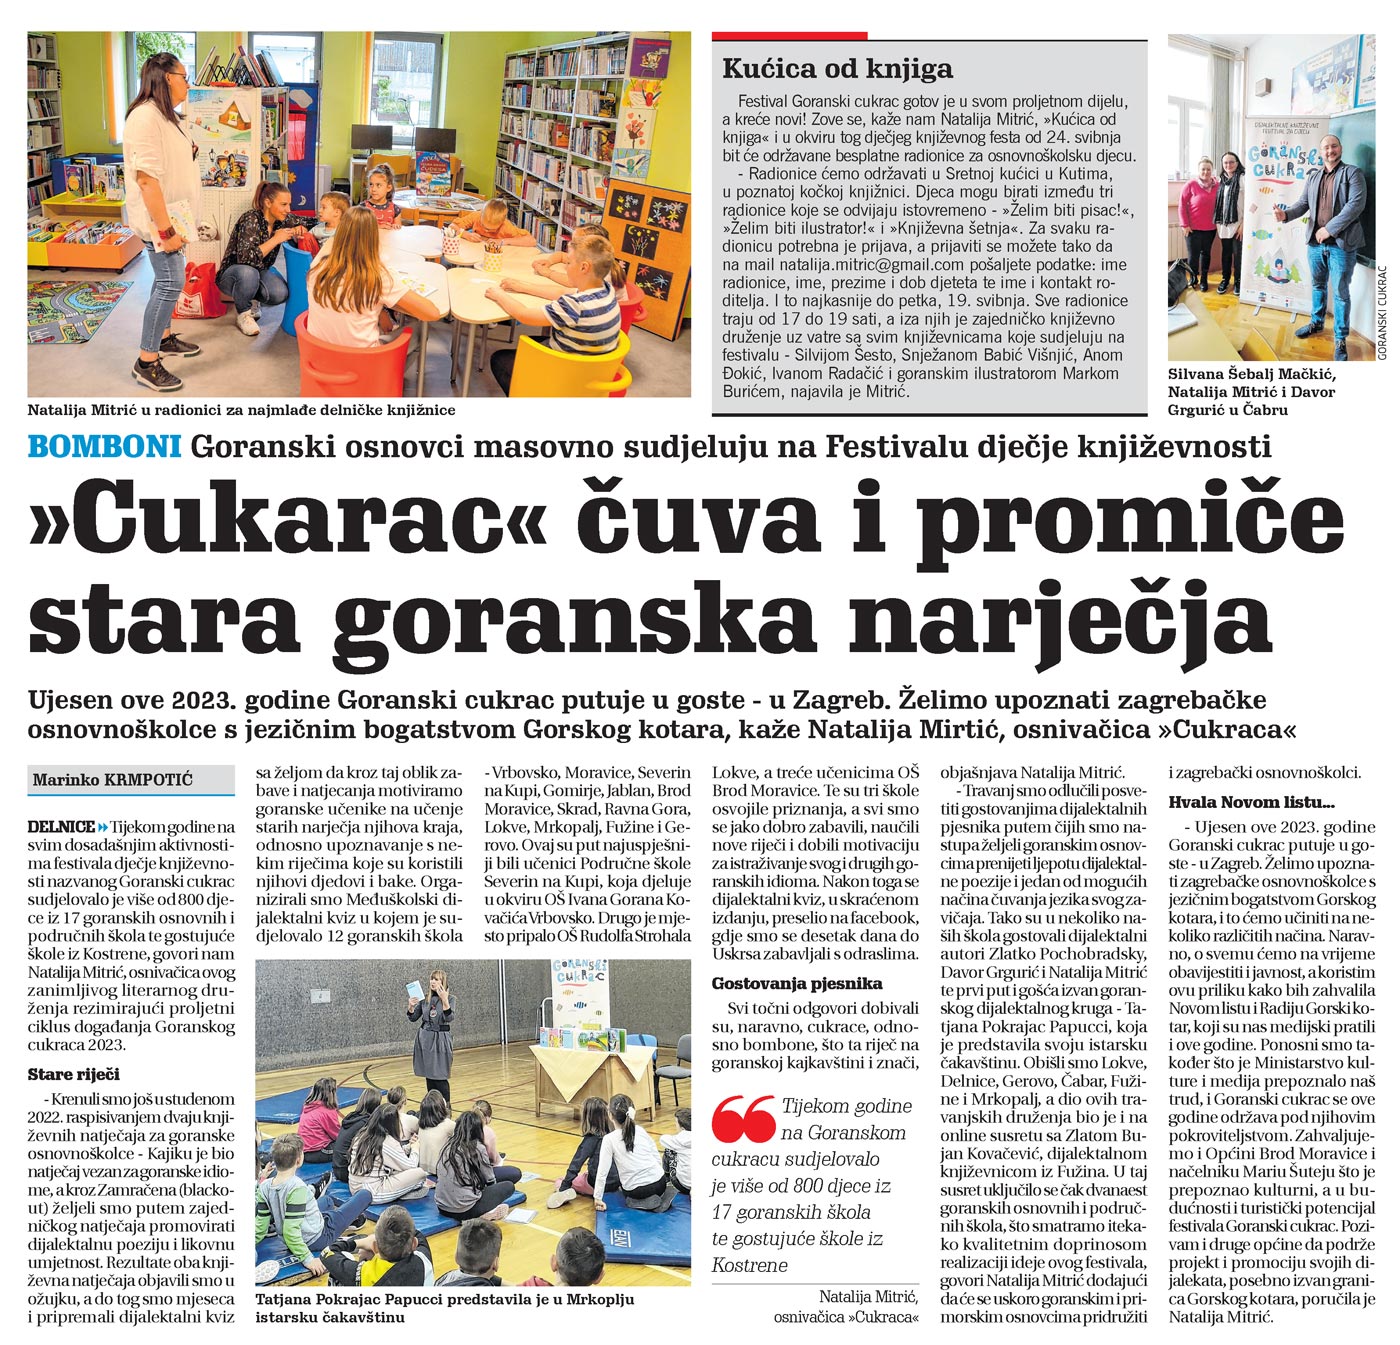 članak, novi list, goranski cukarac, goranski osnovci masovno sudjeluju na Festivalu dječje književnosti